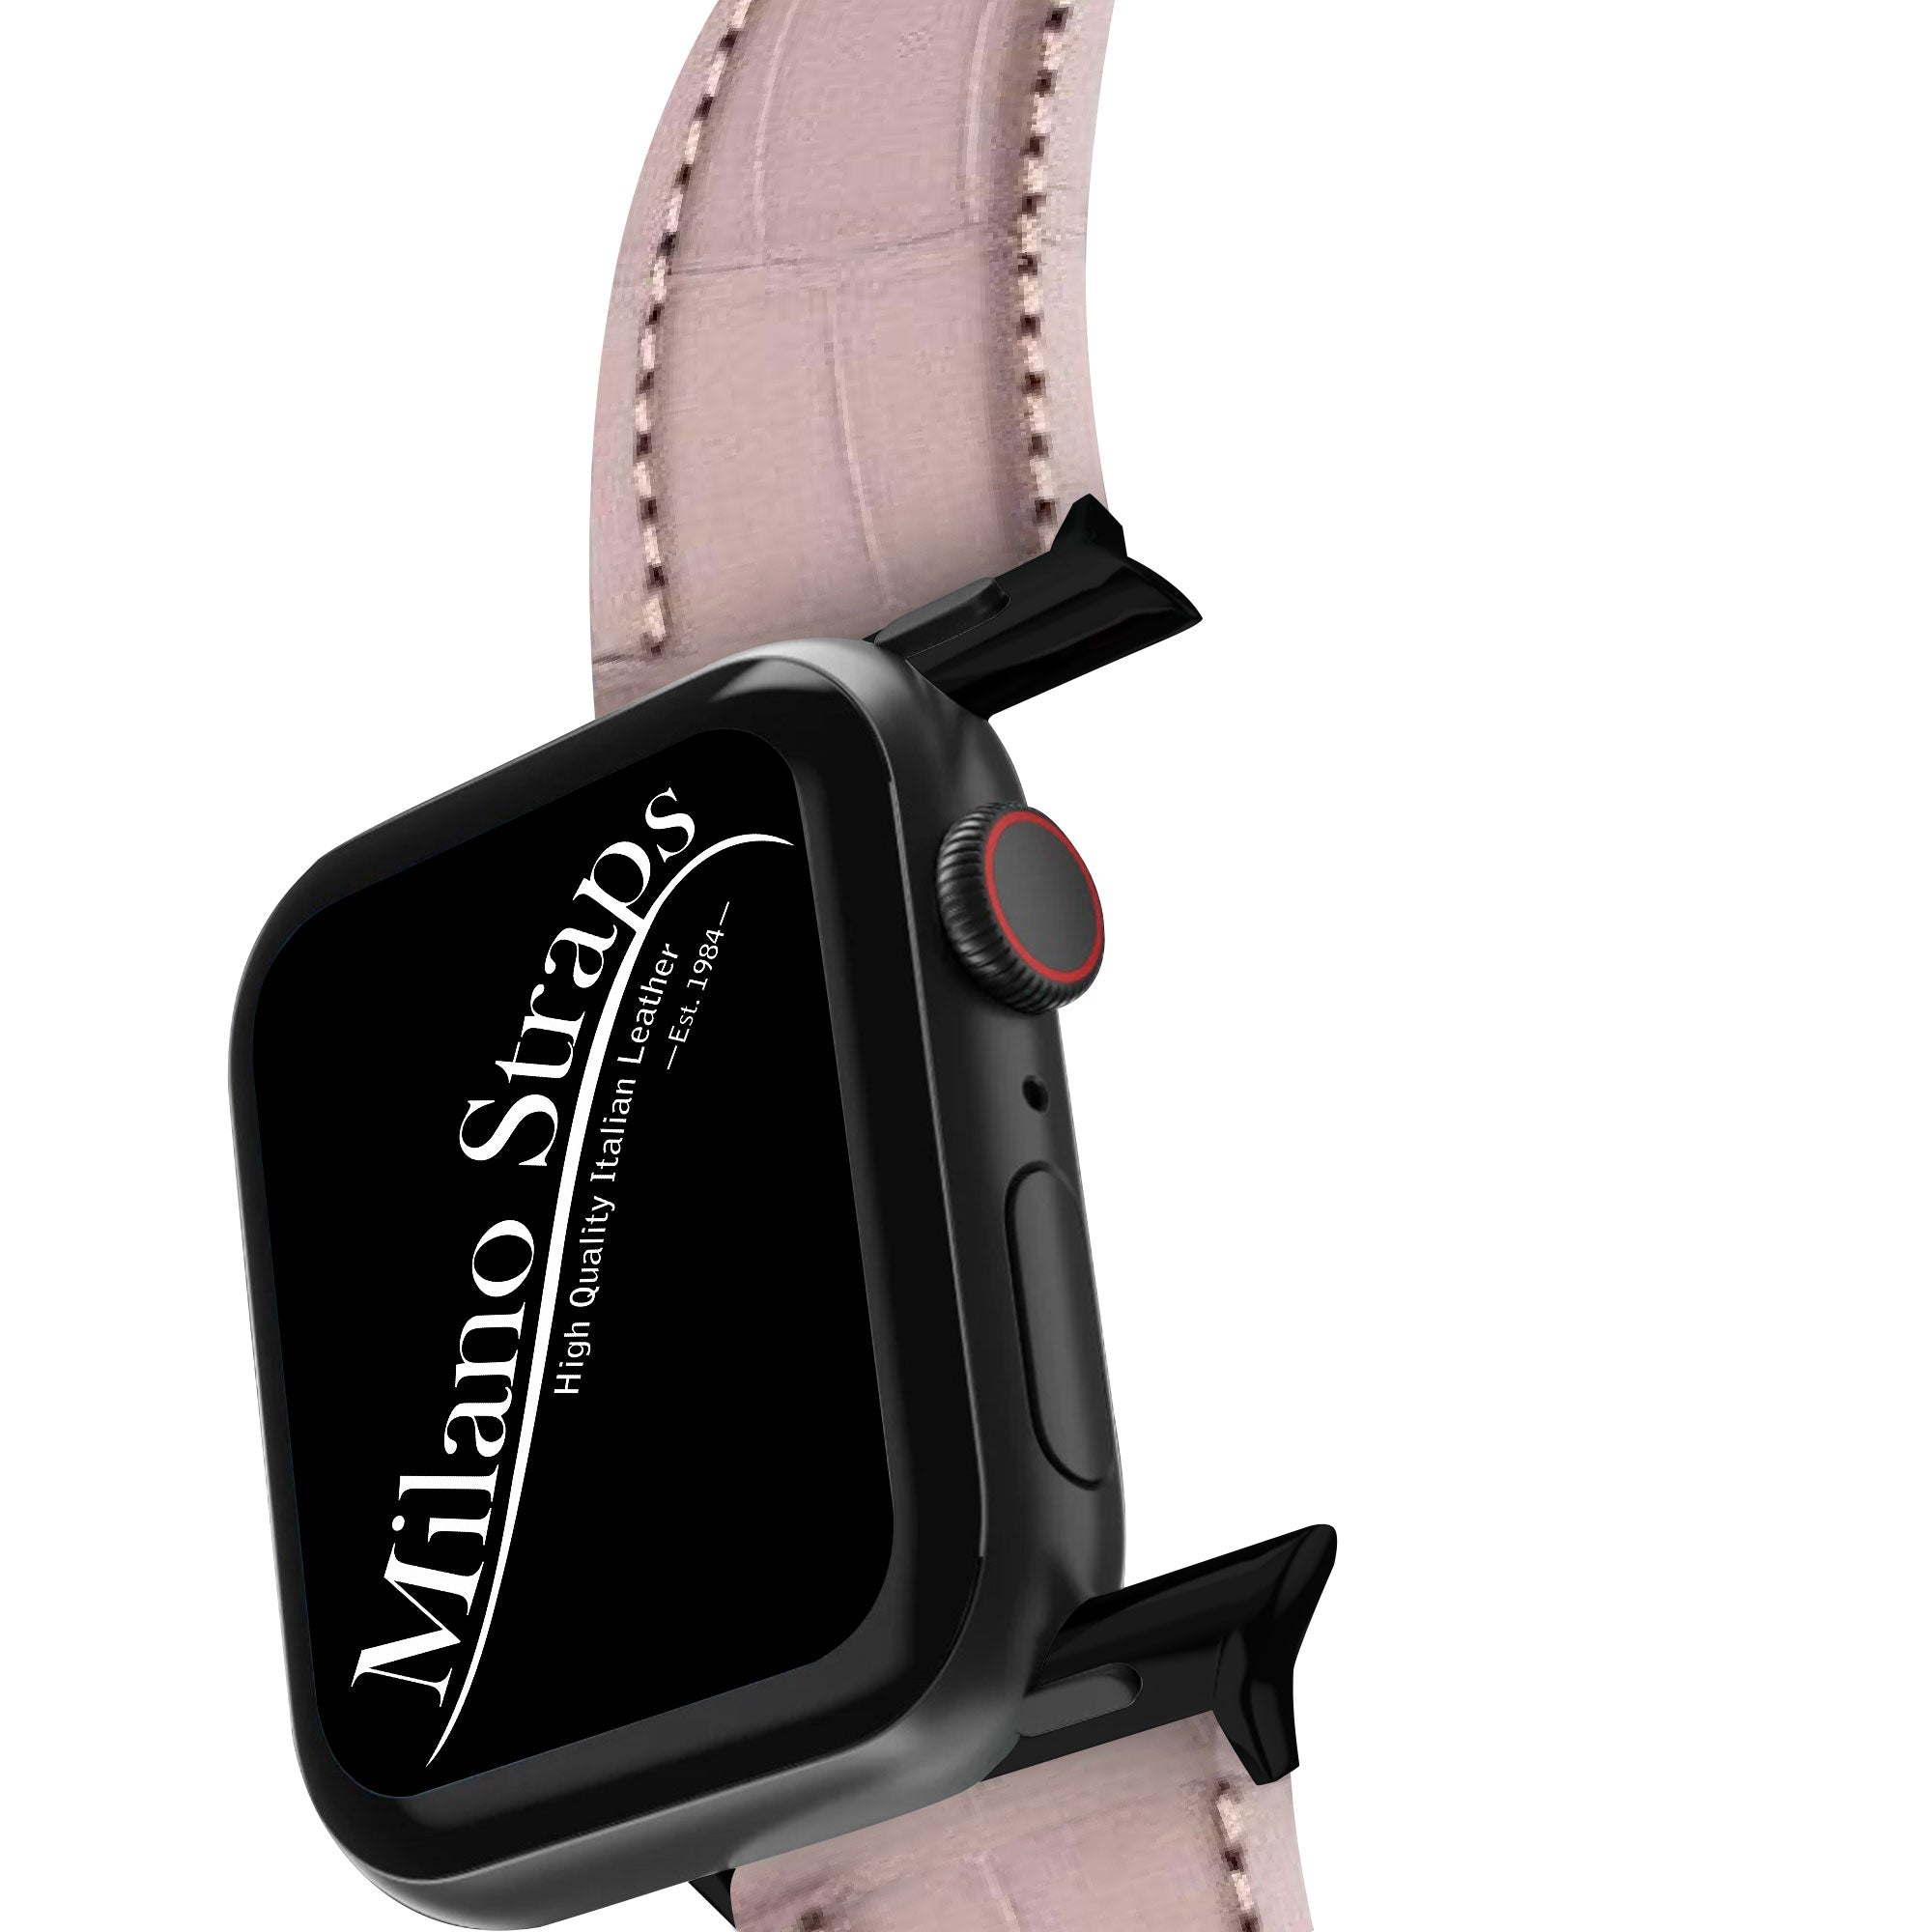 Apple Watch Leather Band ™ Grey Matt Alligator Watch Strap - Milano Straps